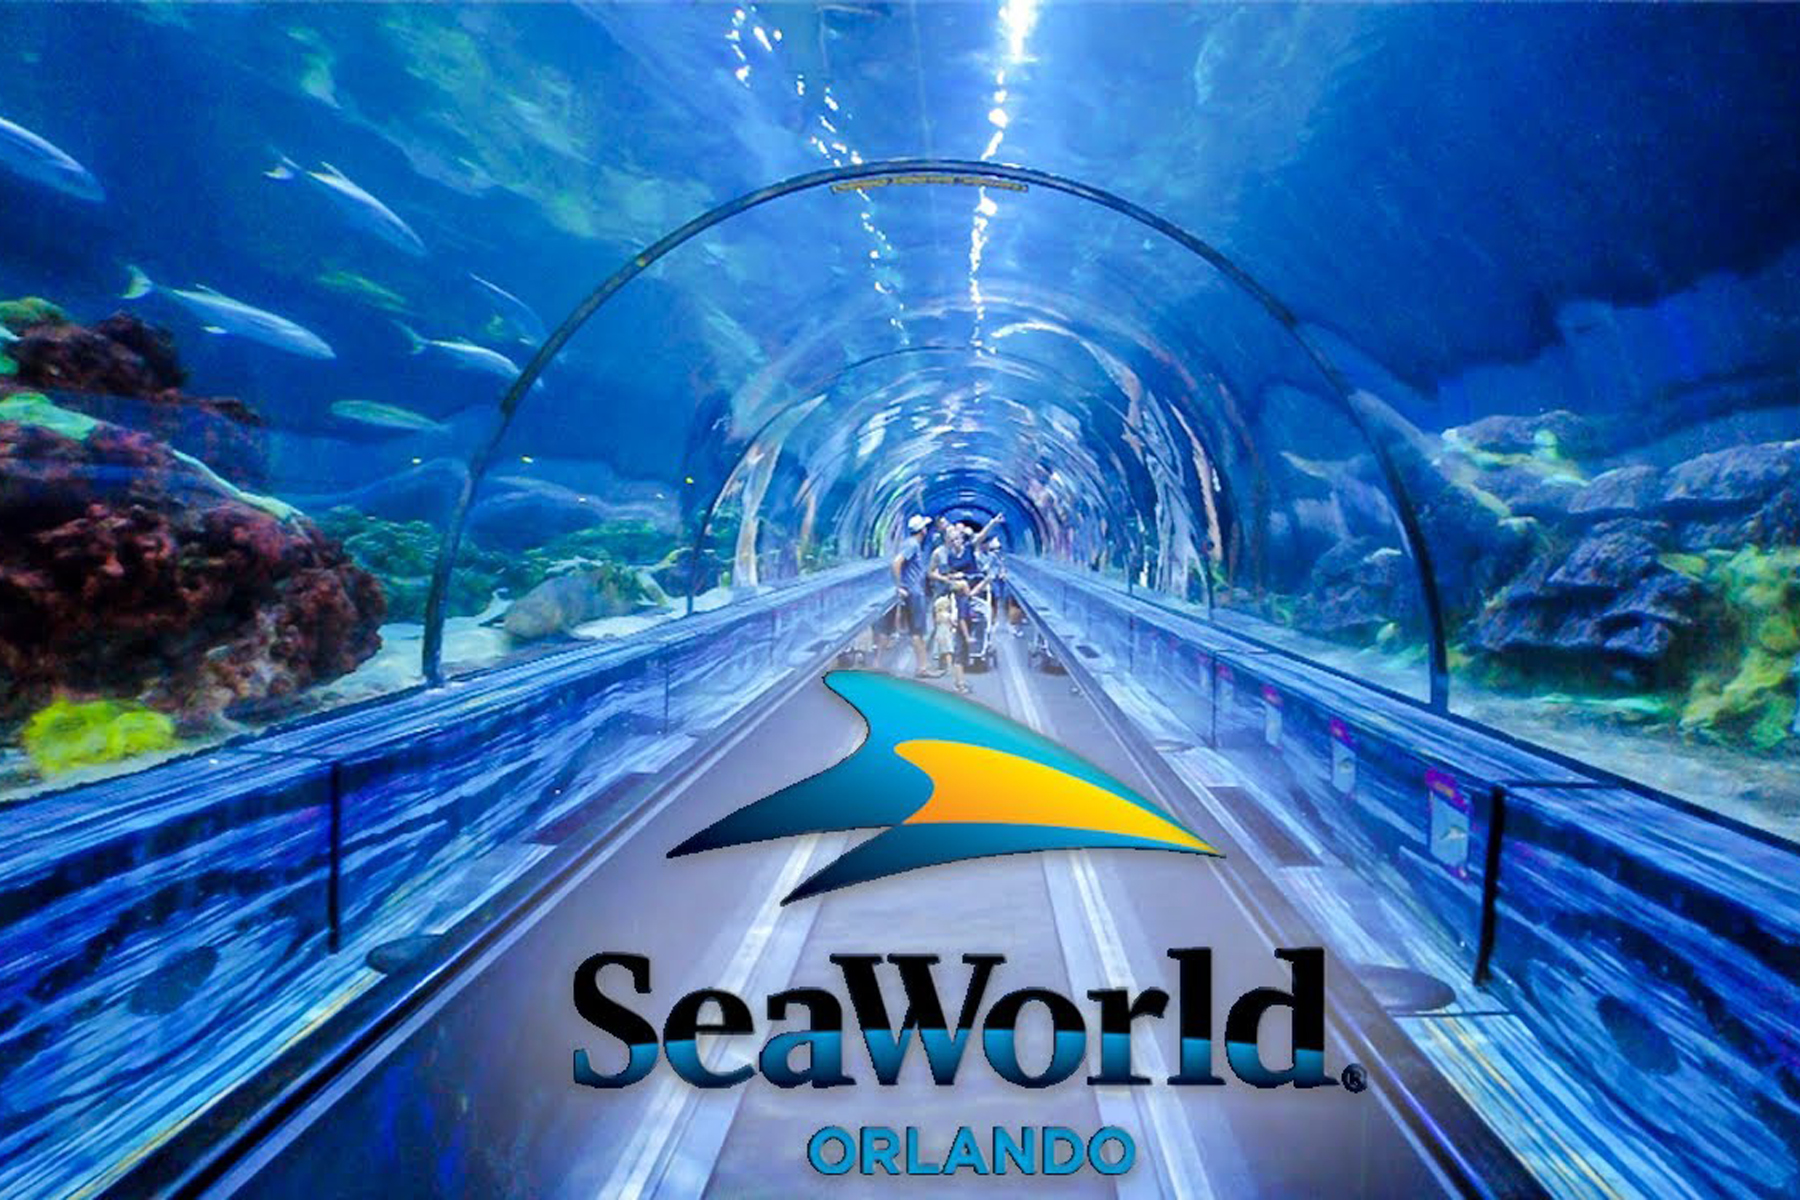 SeaWorld Orlando Florida The Complete Visitor Guide